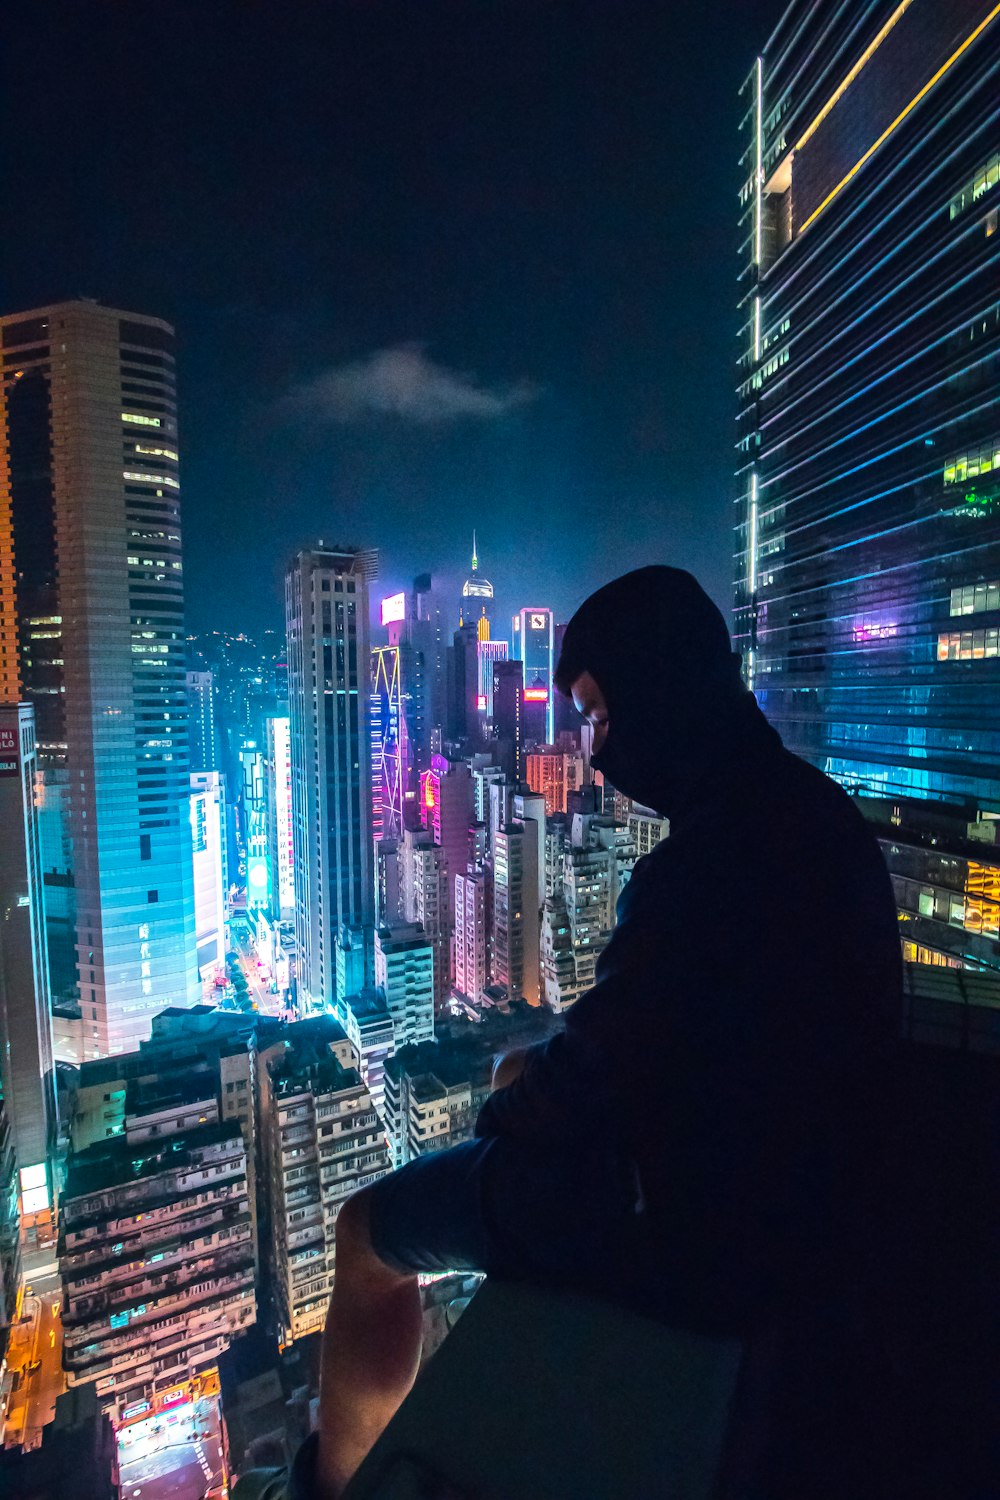 homme assis sur le toit regardant la ville avec des immeubles de grande hauteur